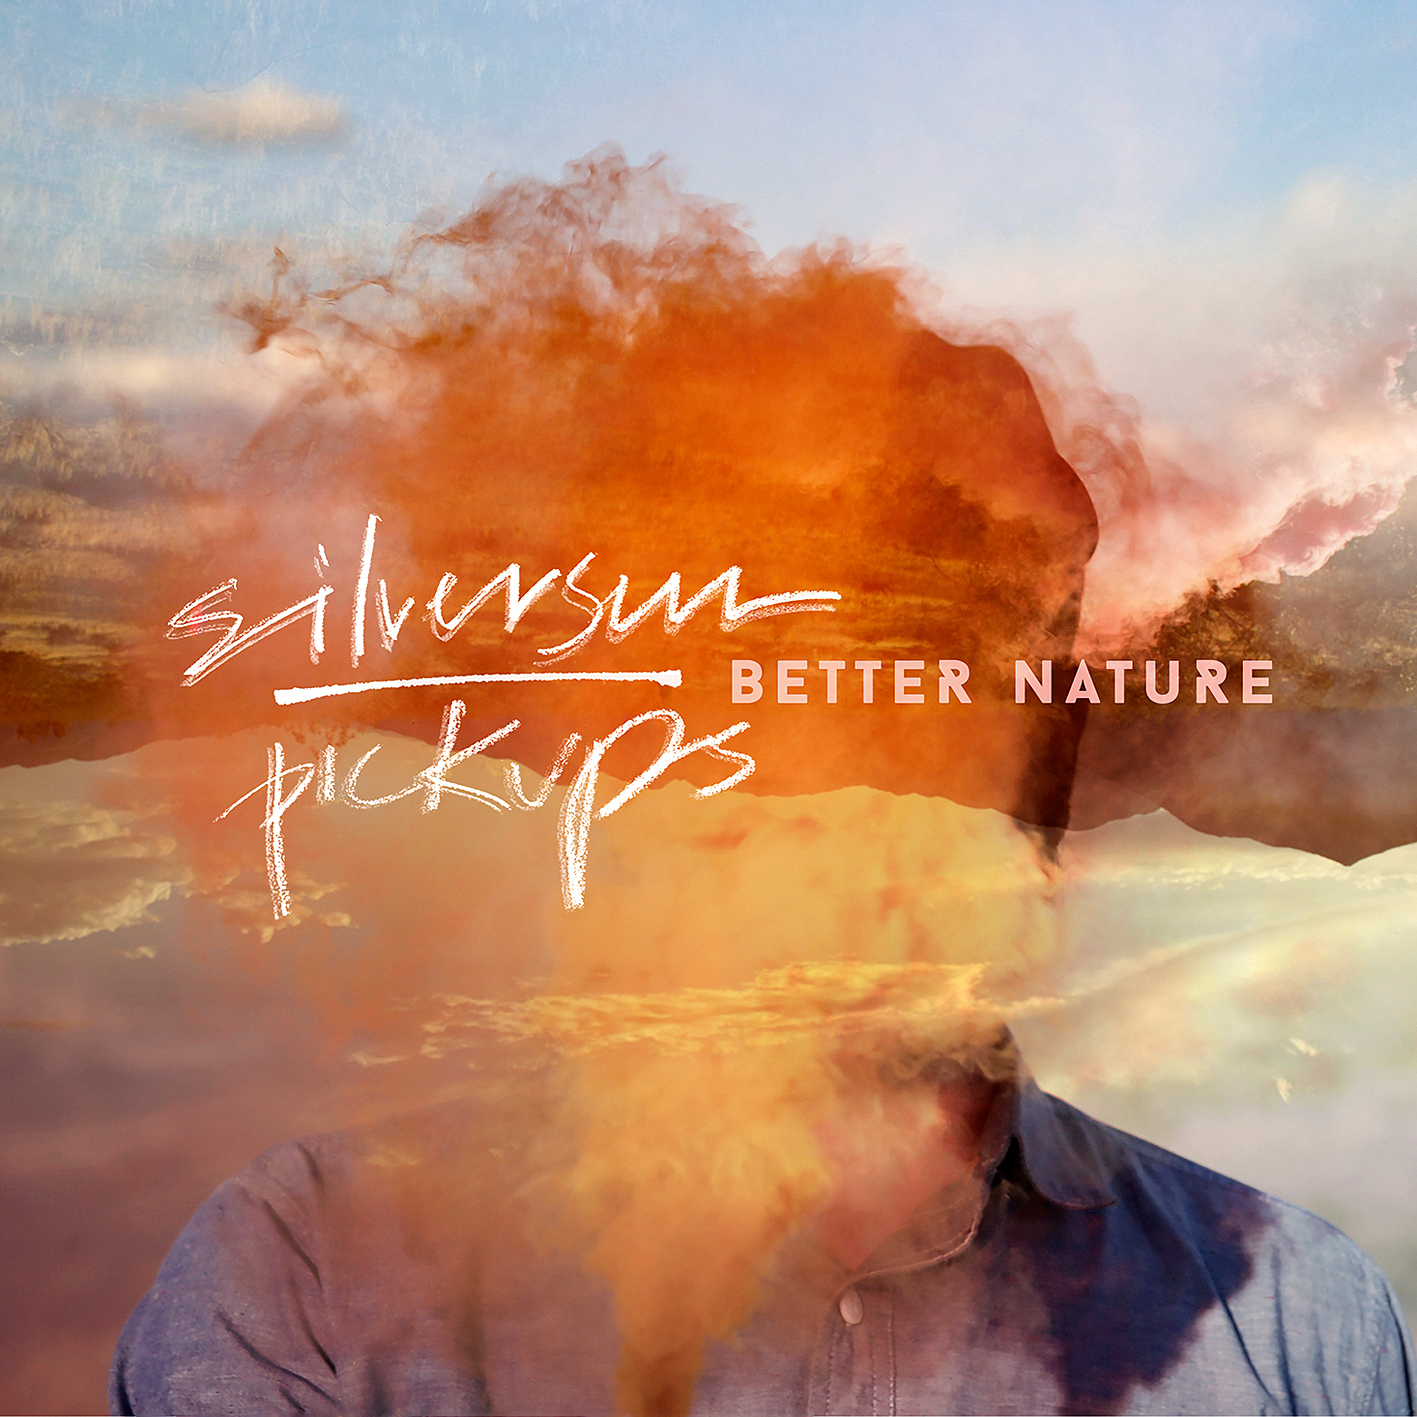 Silversun Pickups - Better Nature (2015) [FLAC 24bit/48kHz]